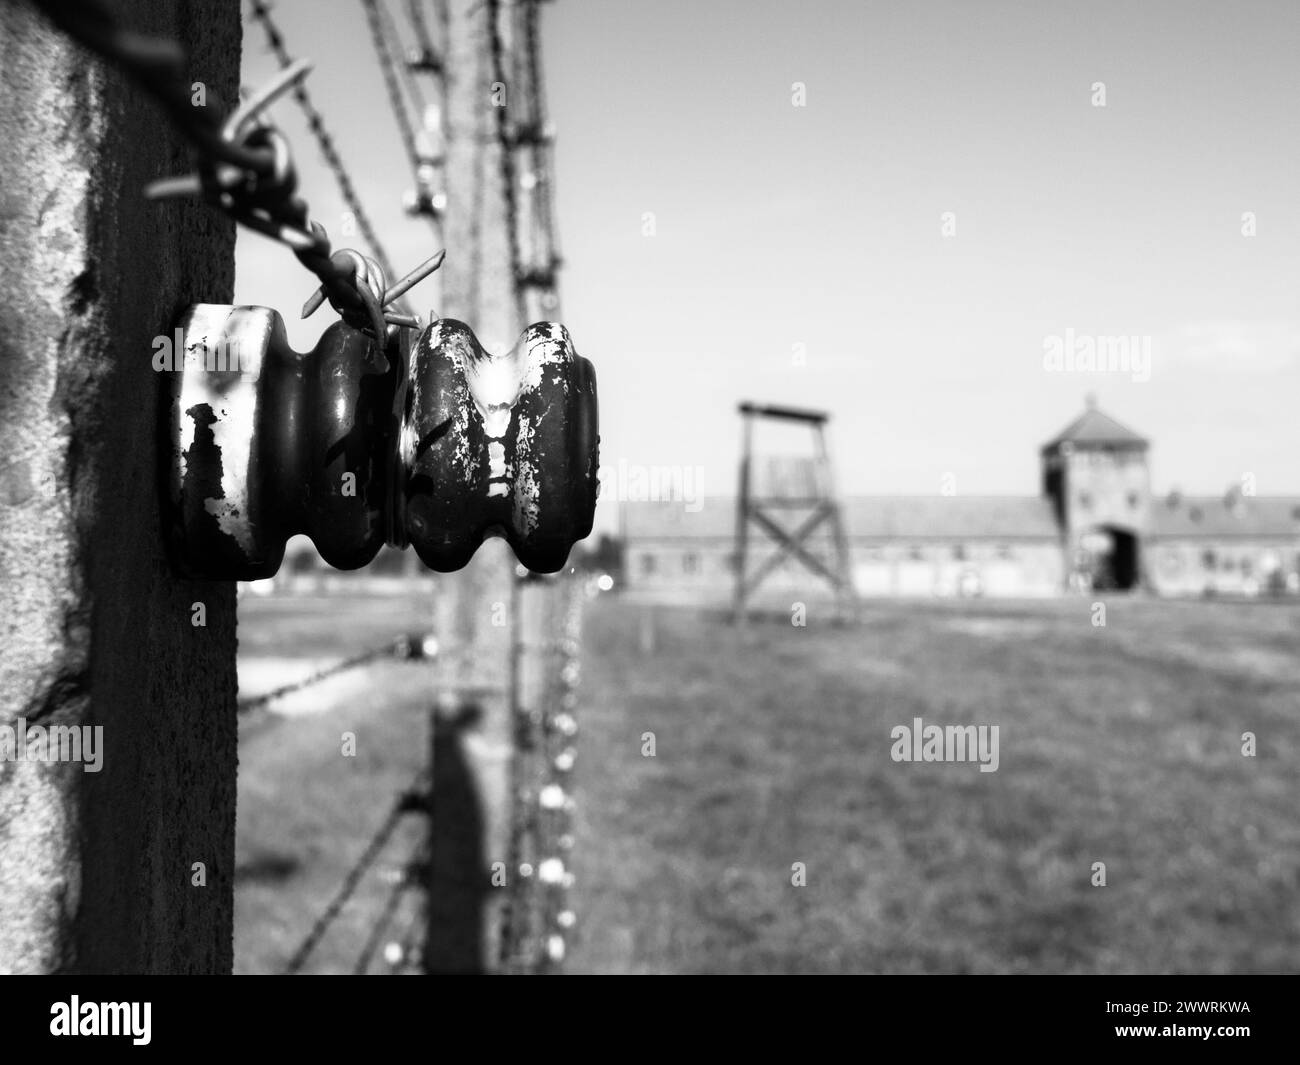 Vue détaillée de la clôture de barbe dans le camp de concentration. Auschwitz Birkenau, alias Oswiecim Brzezinka, Pologne, Europe. Banque D'Images